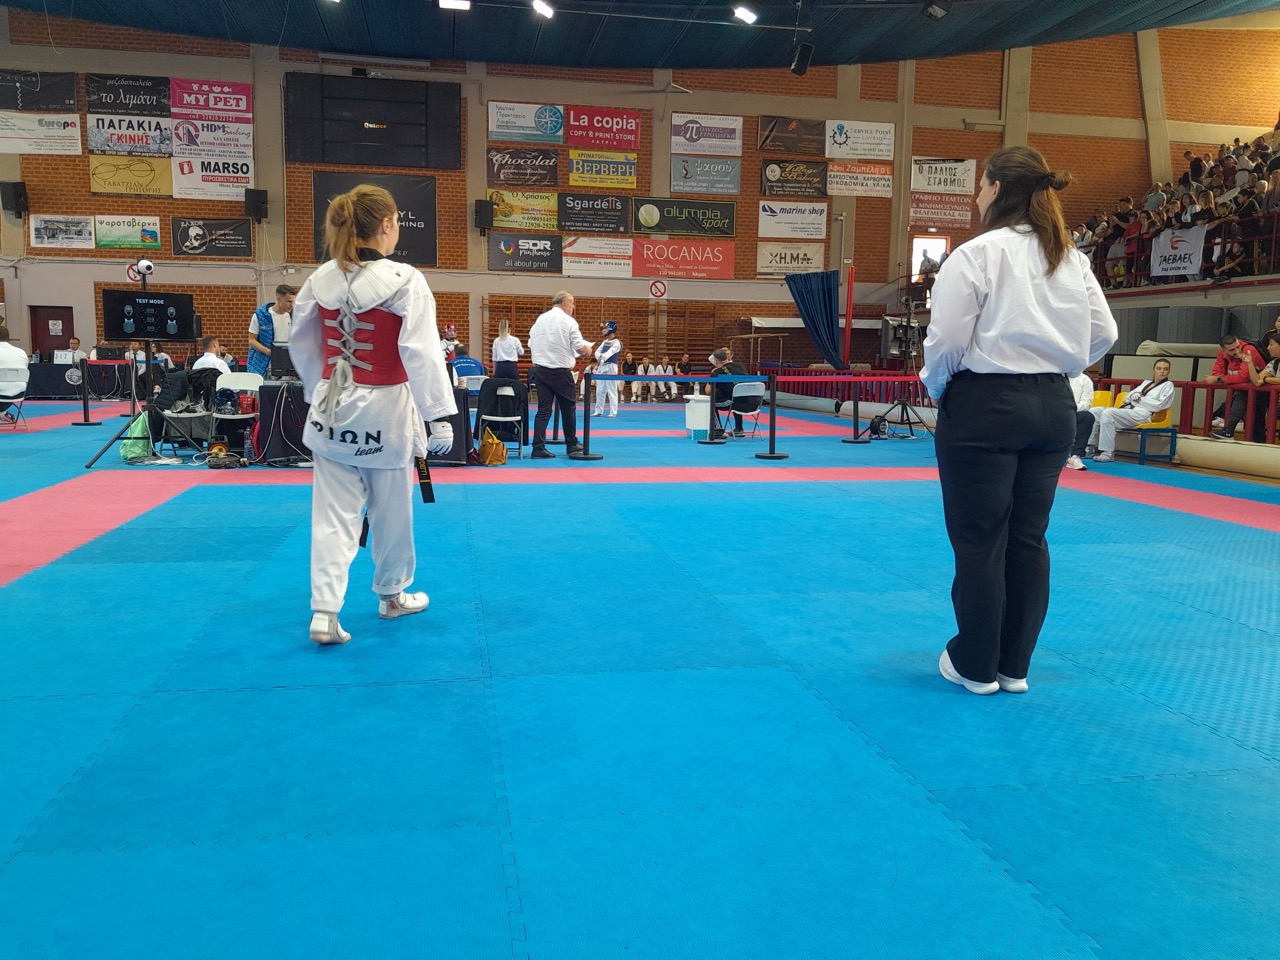 orion-alimos-taekwondo-diasillogiko-protathlima-sportshunter-1